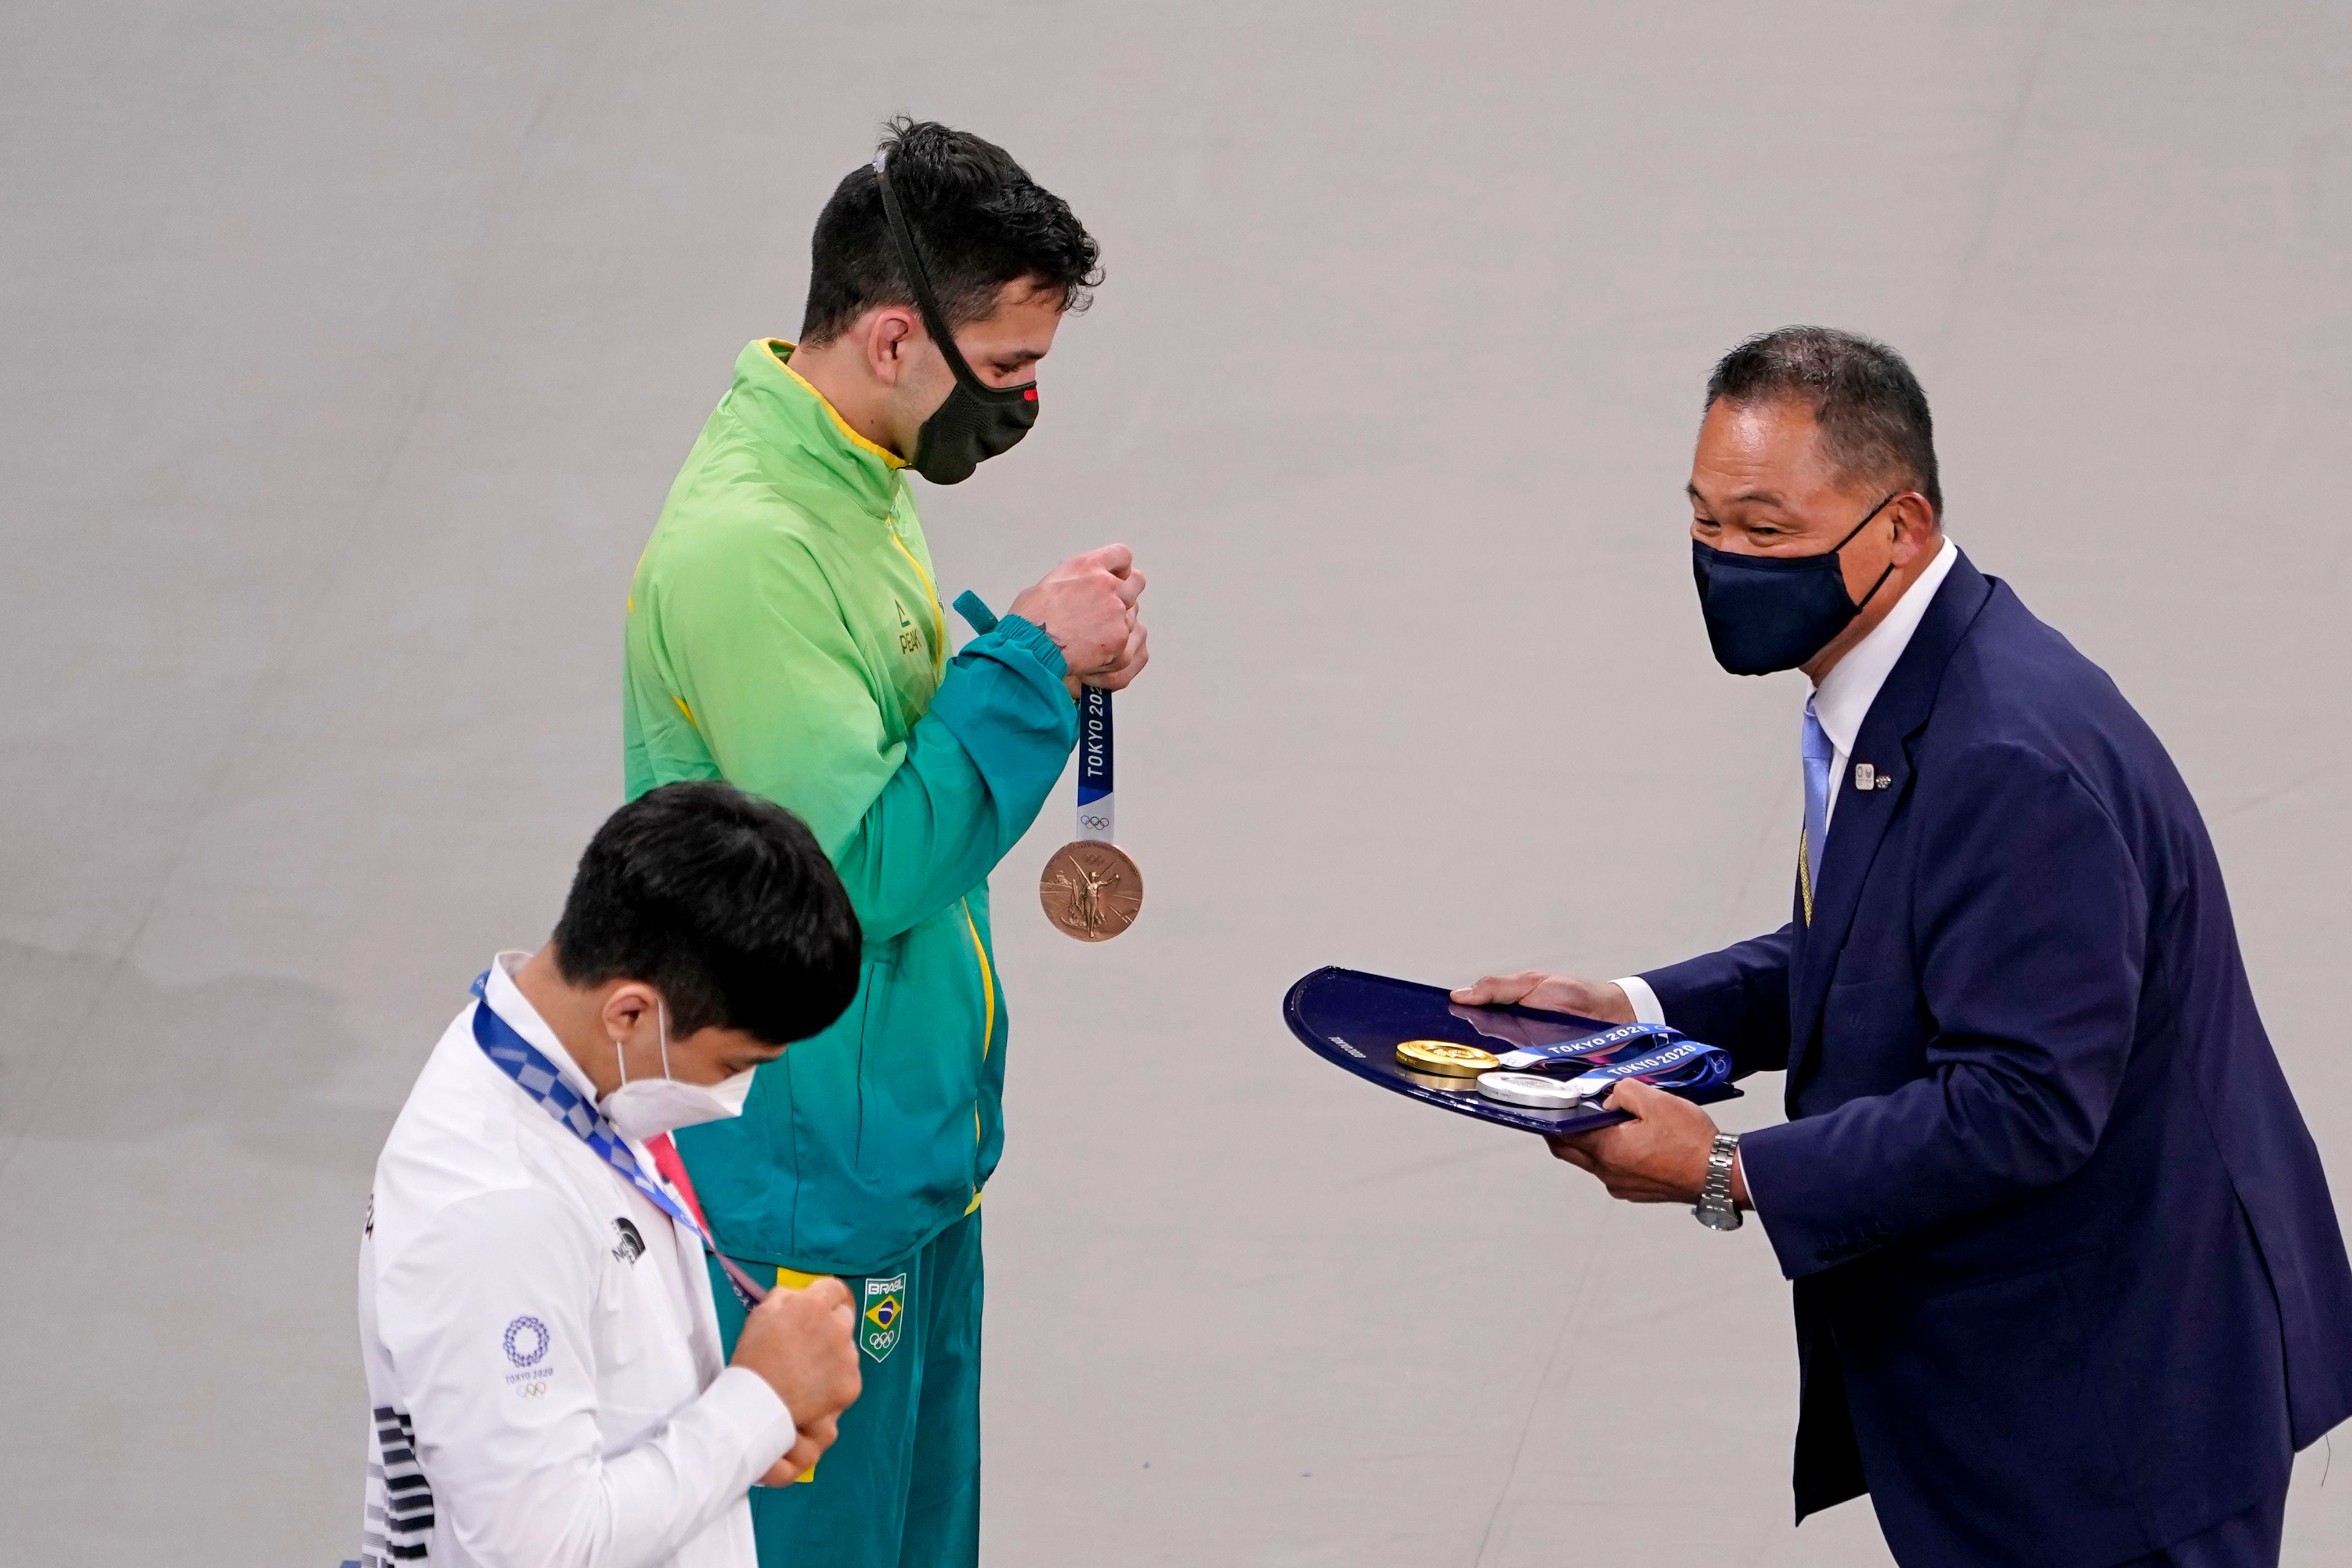 Daniel Cargnin recebe a medalha de bronze do judô categoria 66kg 